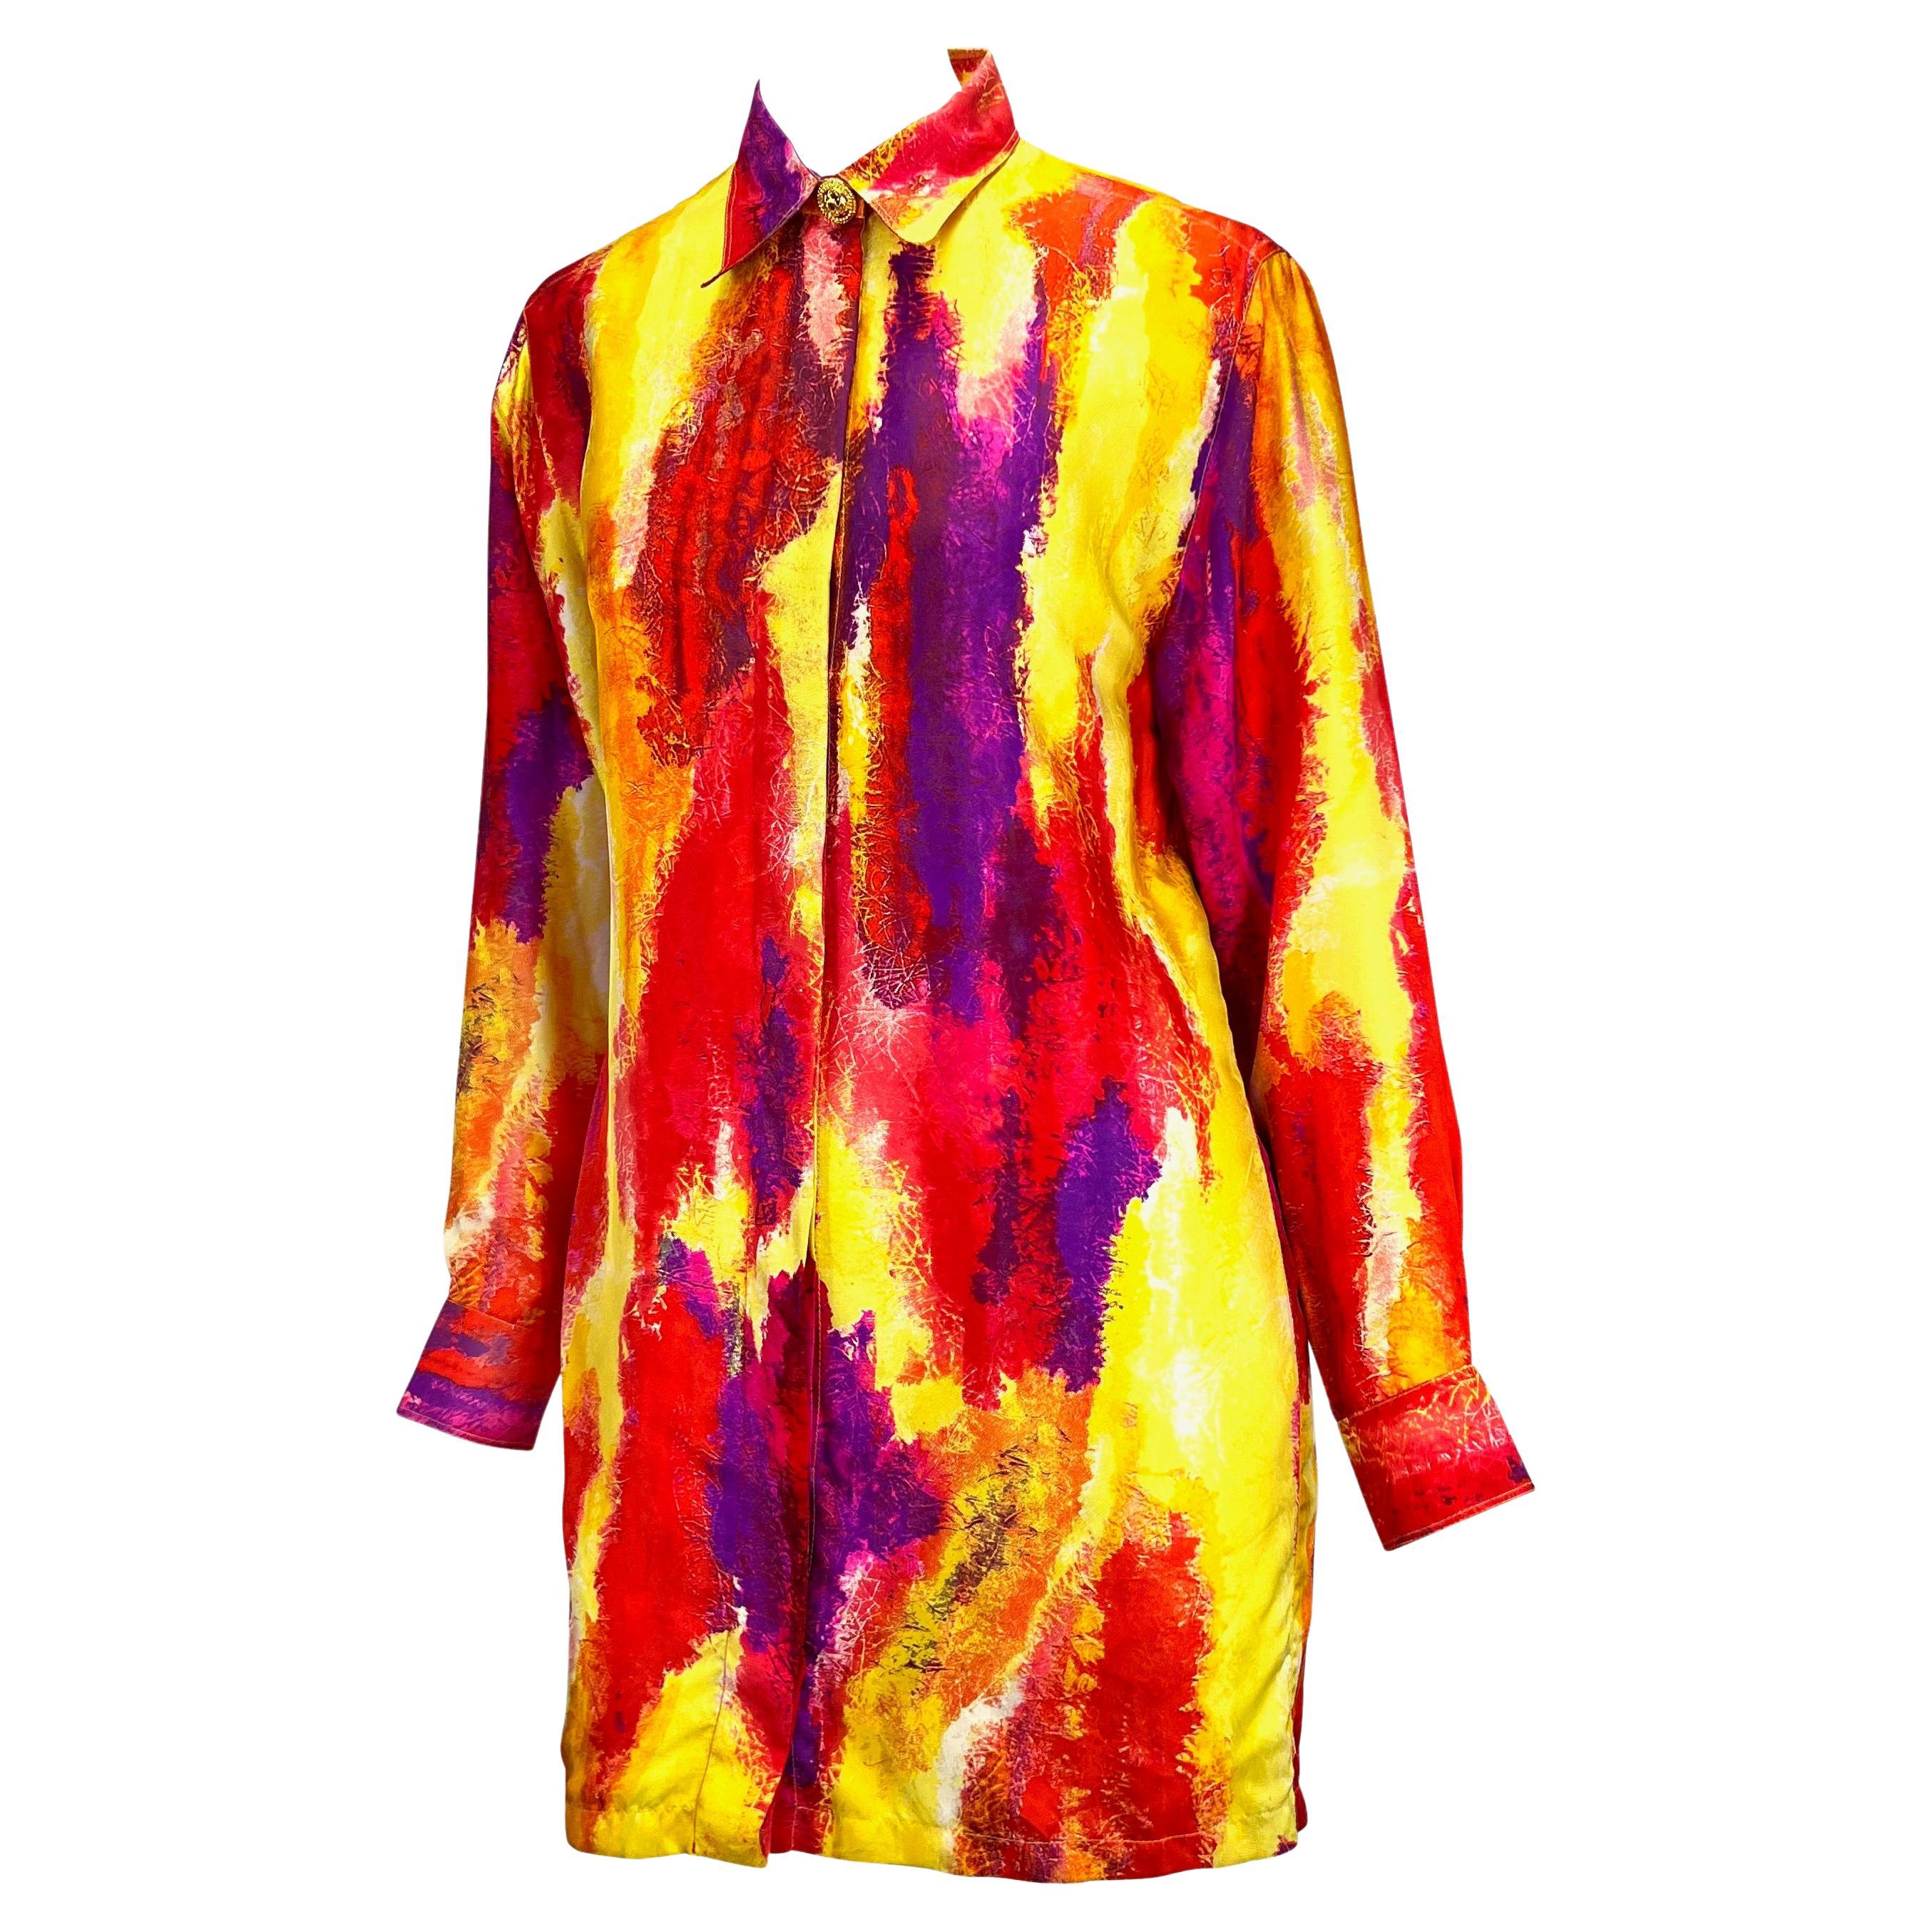 Wir präsentieren ein Kleid von Gianni Versace Couture in leuchtenden Aquarellfarben, entworfen von Gianni Versace. Dieses seltene Kleidungsstück aus der Frühjahr/Sommer-Kollektion 1994 zeigt einen leuchtenden abstrakten Druck, der an Pinselstriche